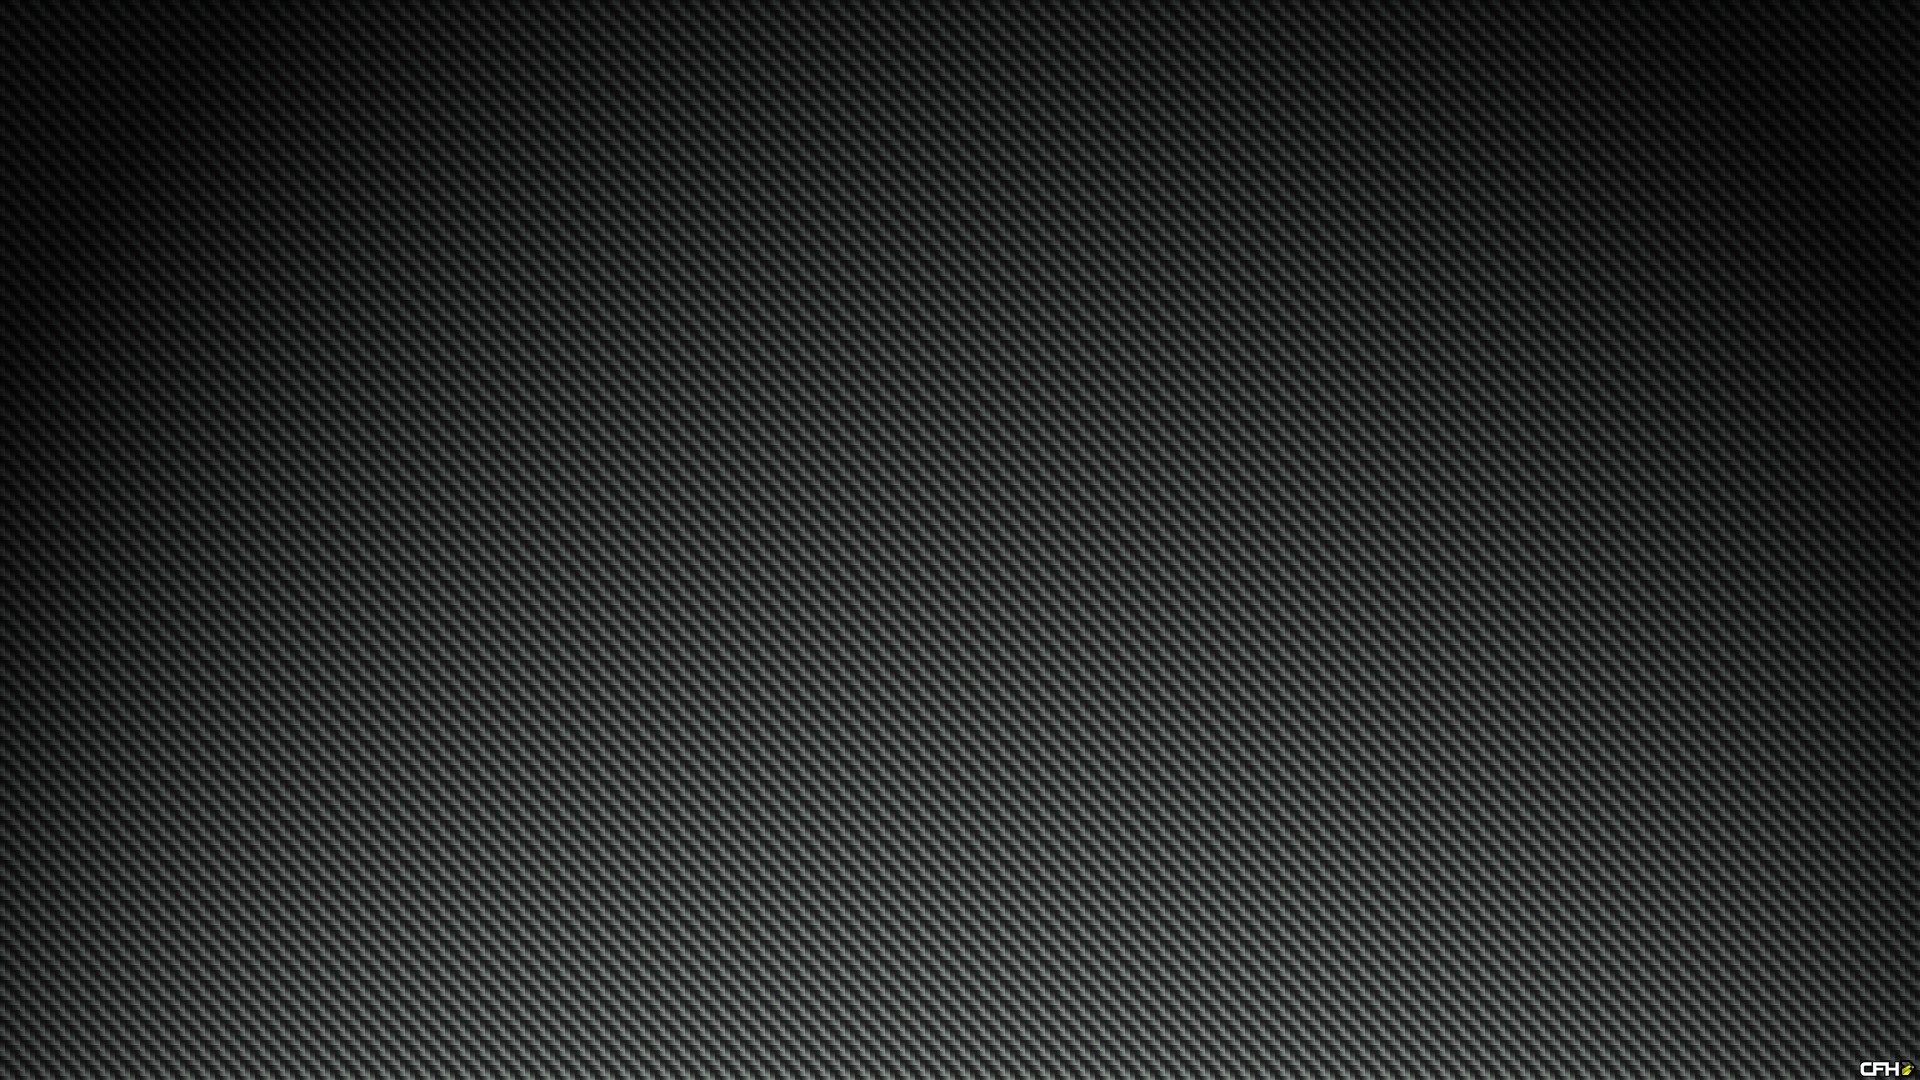 1920x1080 10 Most Popular Hd Carbon Fiber Wallpaper FULL HD 1080p For PC Desktop